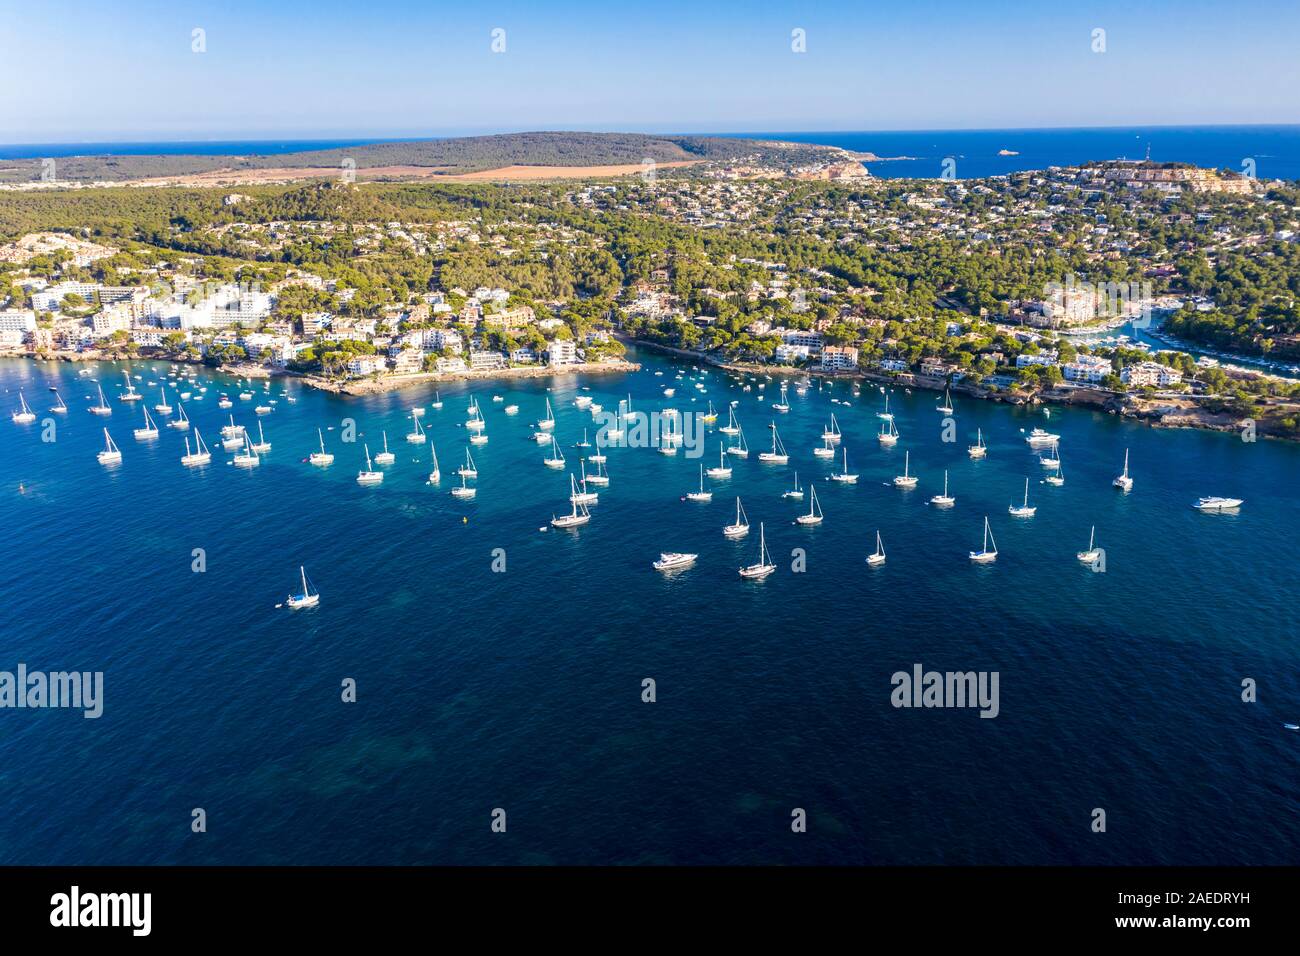 Aerial photo, view of the Costa de la Calma and Santa Ponca coasts, hotel complexes and sailing boats in the water, Costa de la Calma, Caliva region Stock Photo